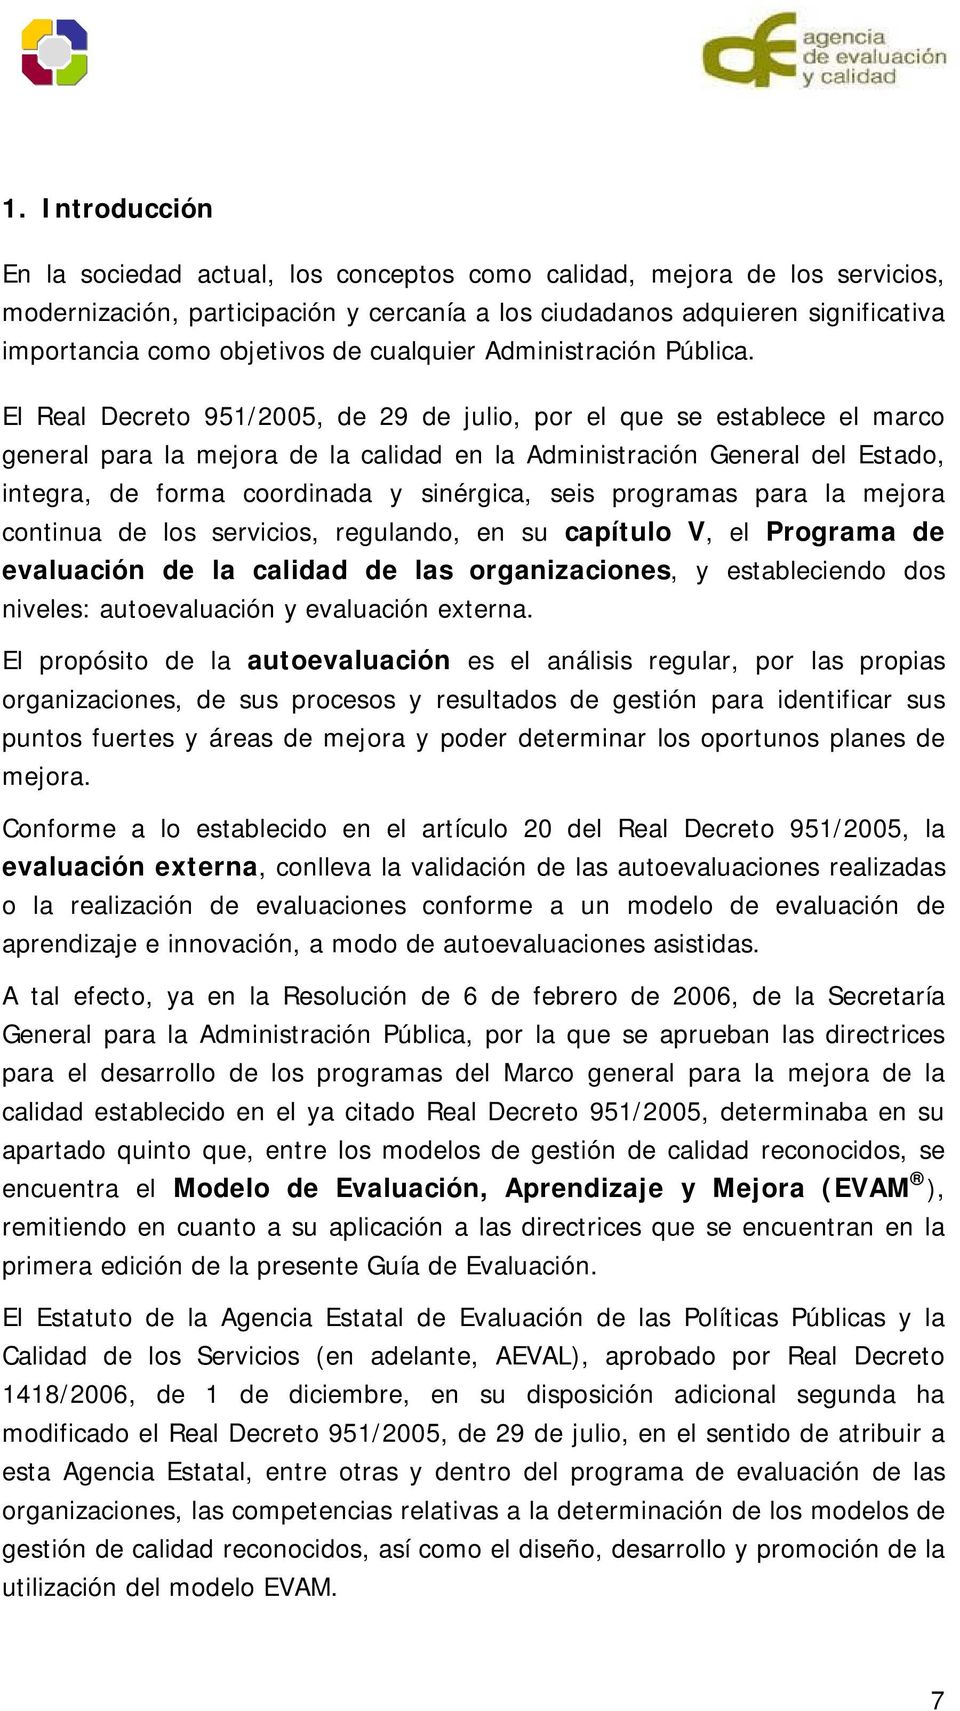 El Real Decreto 951/2005, de 29 de julio, por el que se establece el marco general para la mejora de la calidad en la Administración General del Estado, integra, de forma coordinada y sinérgica, seis